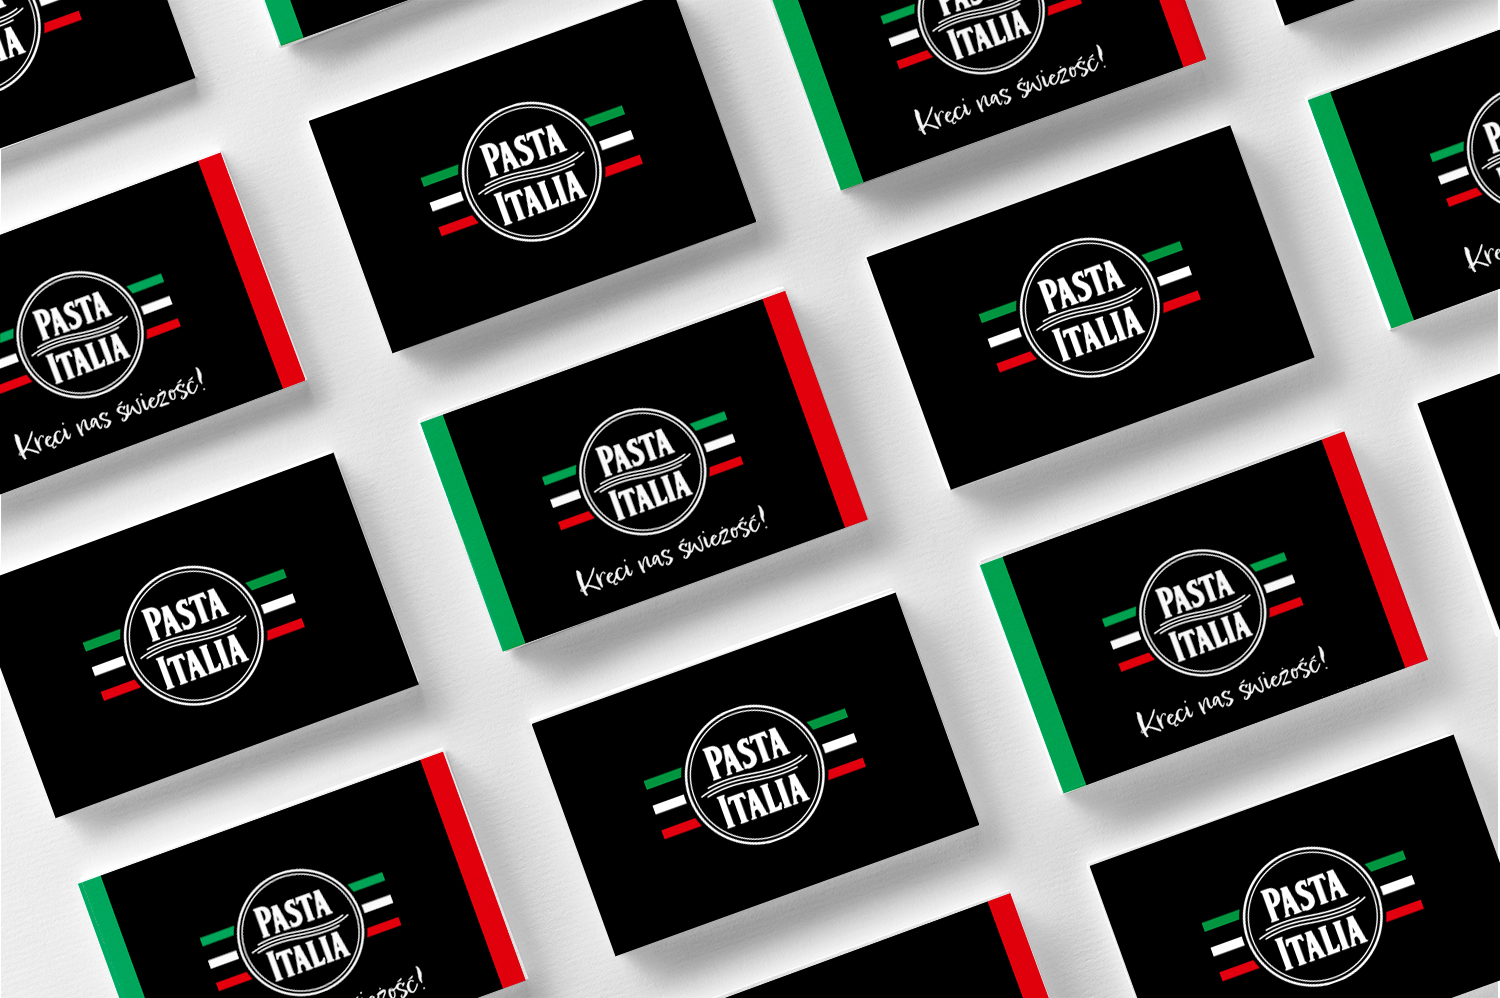 Logo Pasta Italia przedstawione na wizytówkach